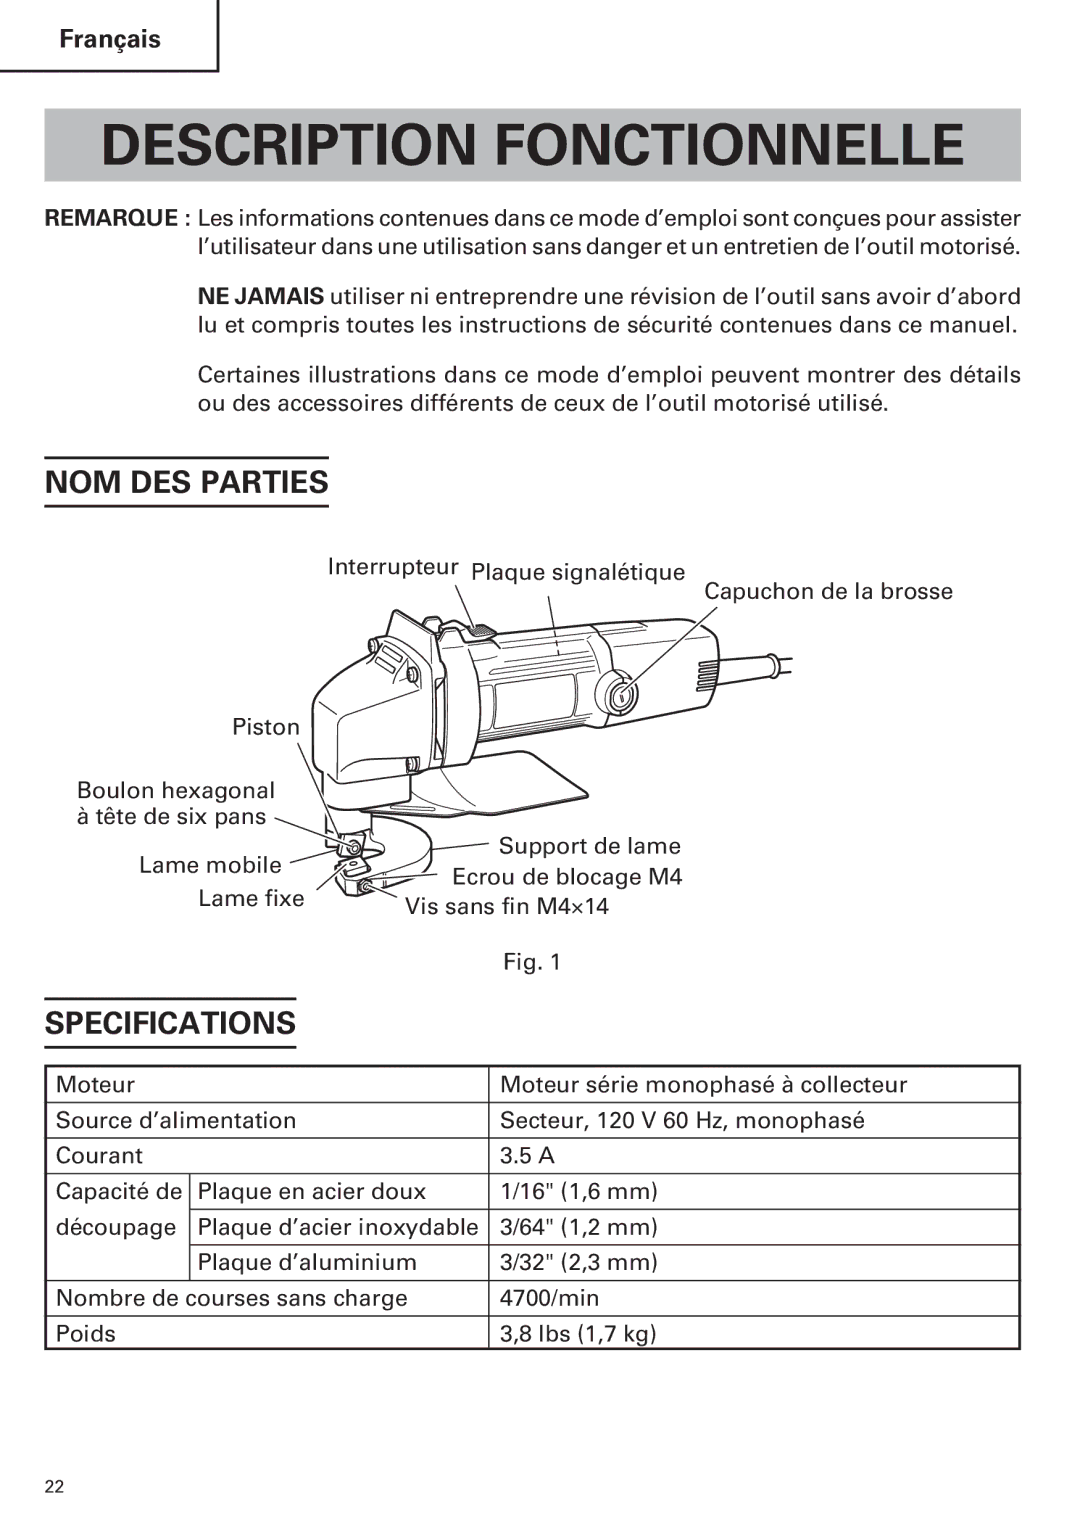 Hitachi CE 16SA instruction manual Description Fonctionnelle, NOM DES Parties 